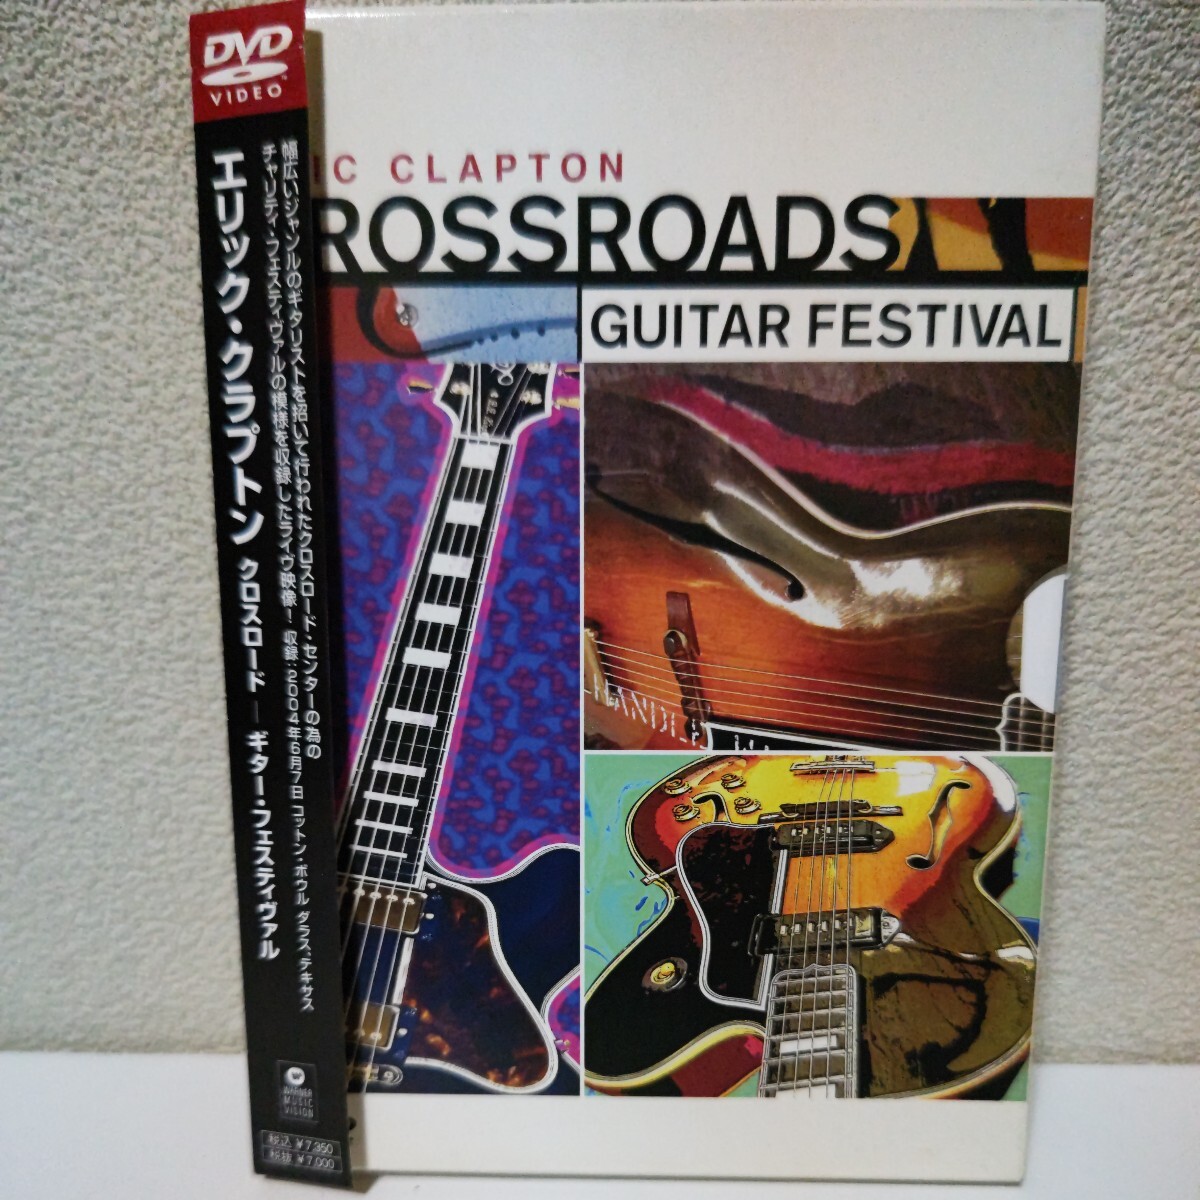  Eric *klap ton / Crossroad - guitar * festival domestic record DVD 2 sheets set Robert *k Ray J.J.ke il Joe *worushuetc